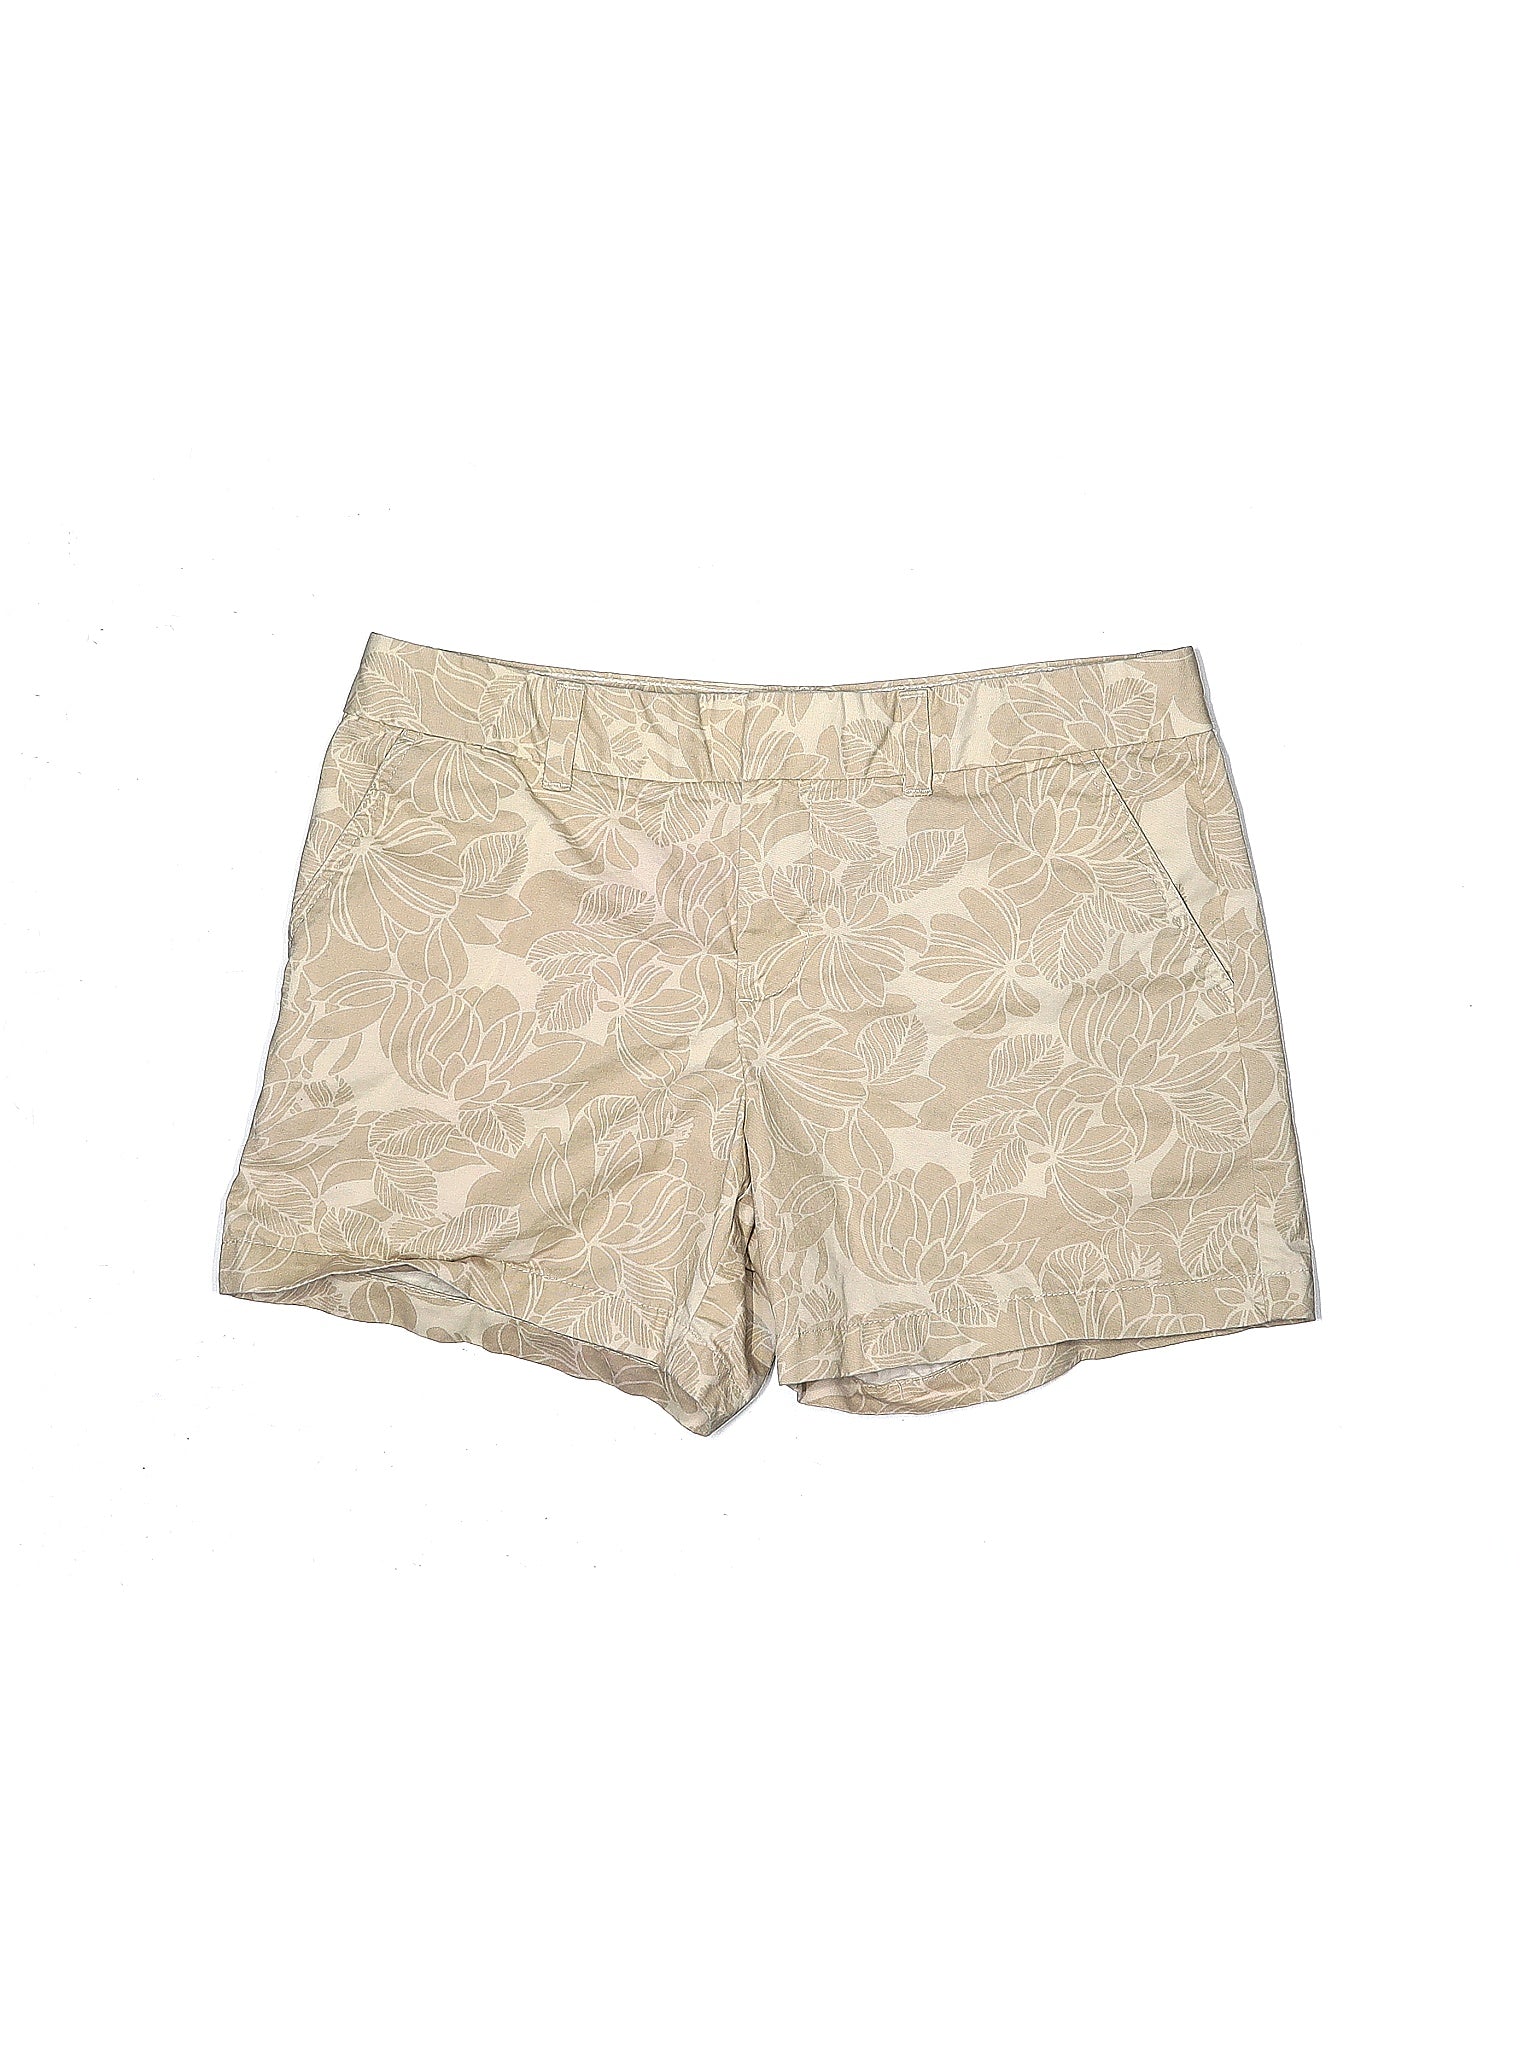 Khaki Shorts size - 10